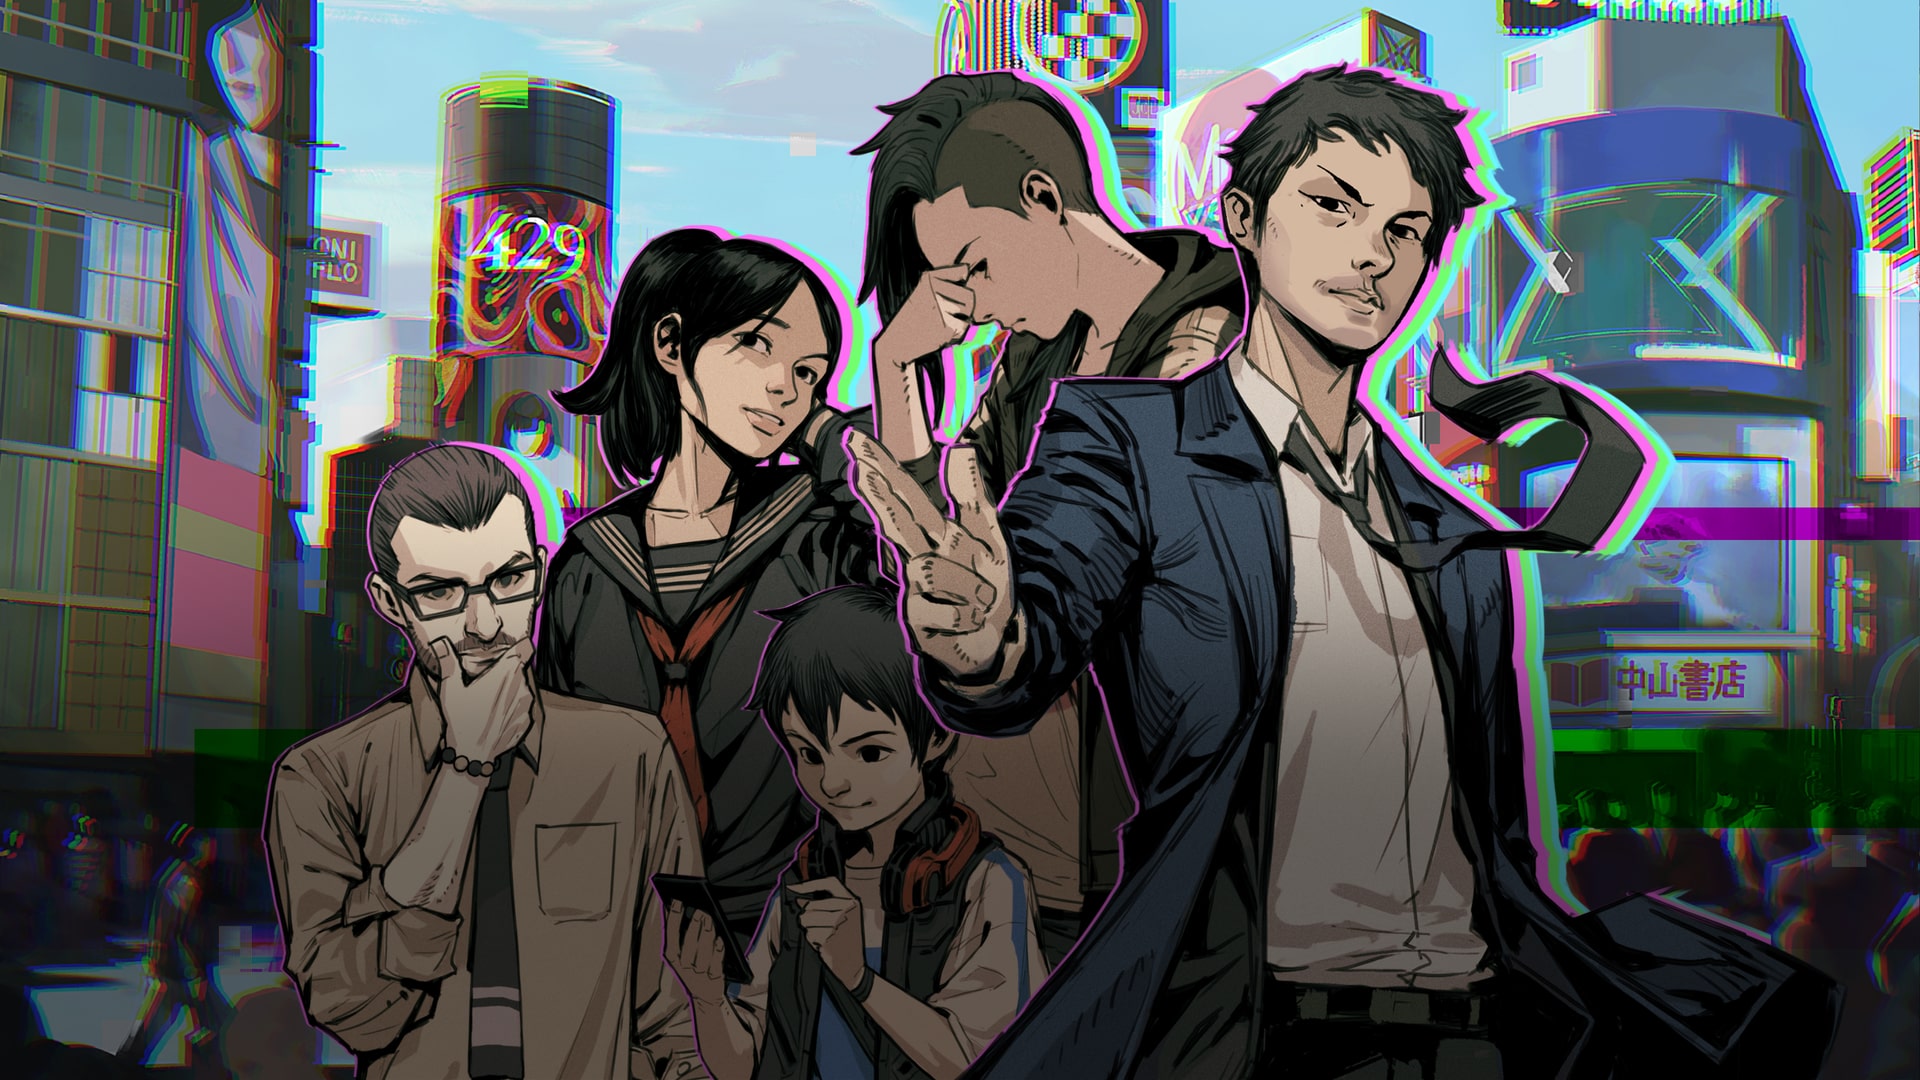 Ghostwire: Tokyo [PS5] – Uma Despedida Digna da Bethesda - GameForces